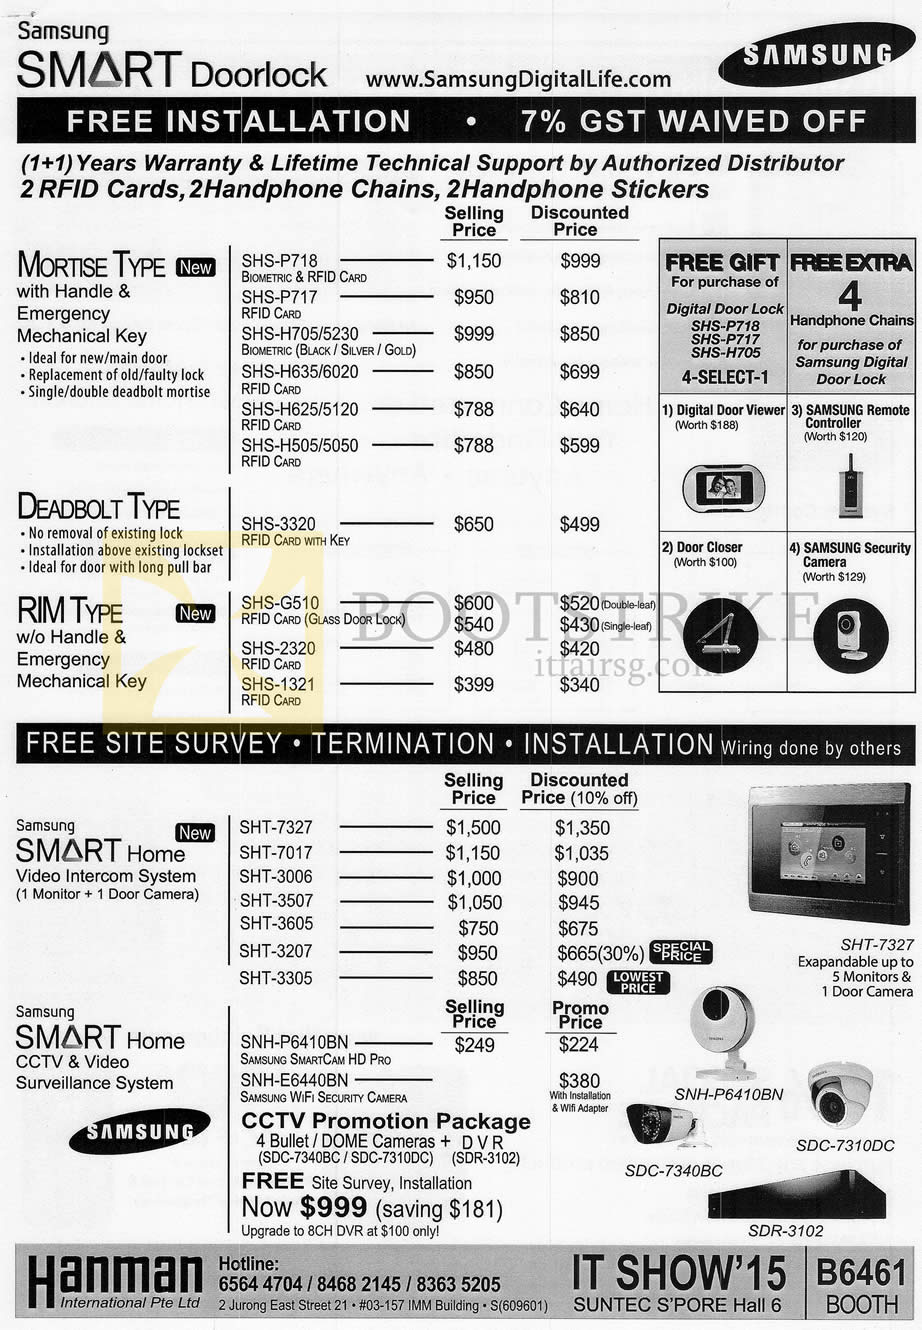 IT SHOW 2015 price list image brochure of Hanman Price List Samsung Smart Doorlock Mortise, Deadbolt, Rim Type, Smart Home